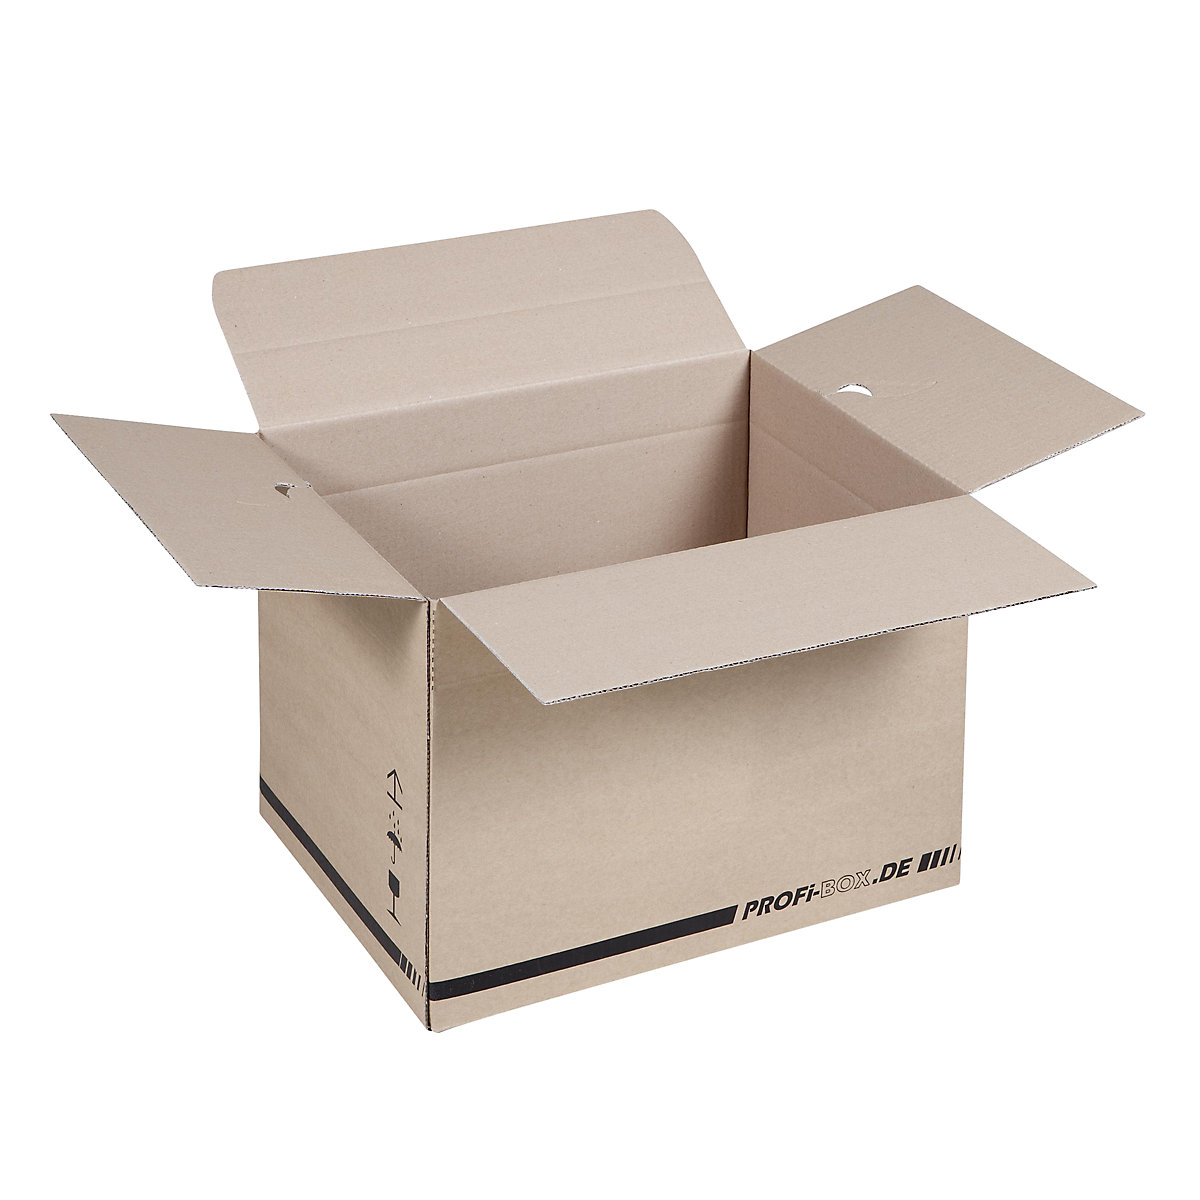 Profi-Boxen, aus 1-welliger Pappe, FEFCO 0701, Innenmaße 384 x 284 x 284 mm, VE 50 Stk-10